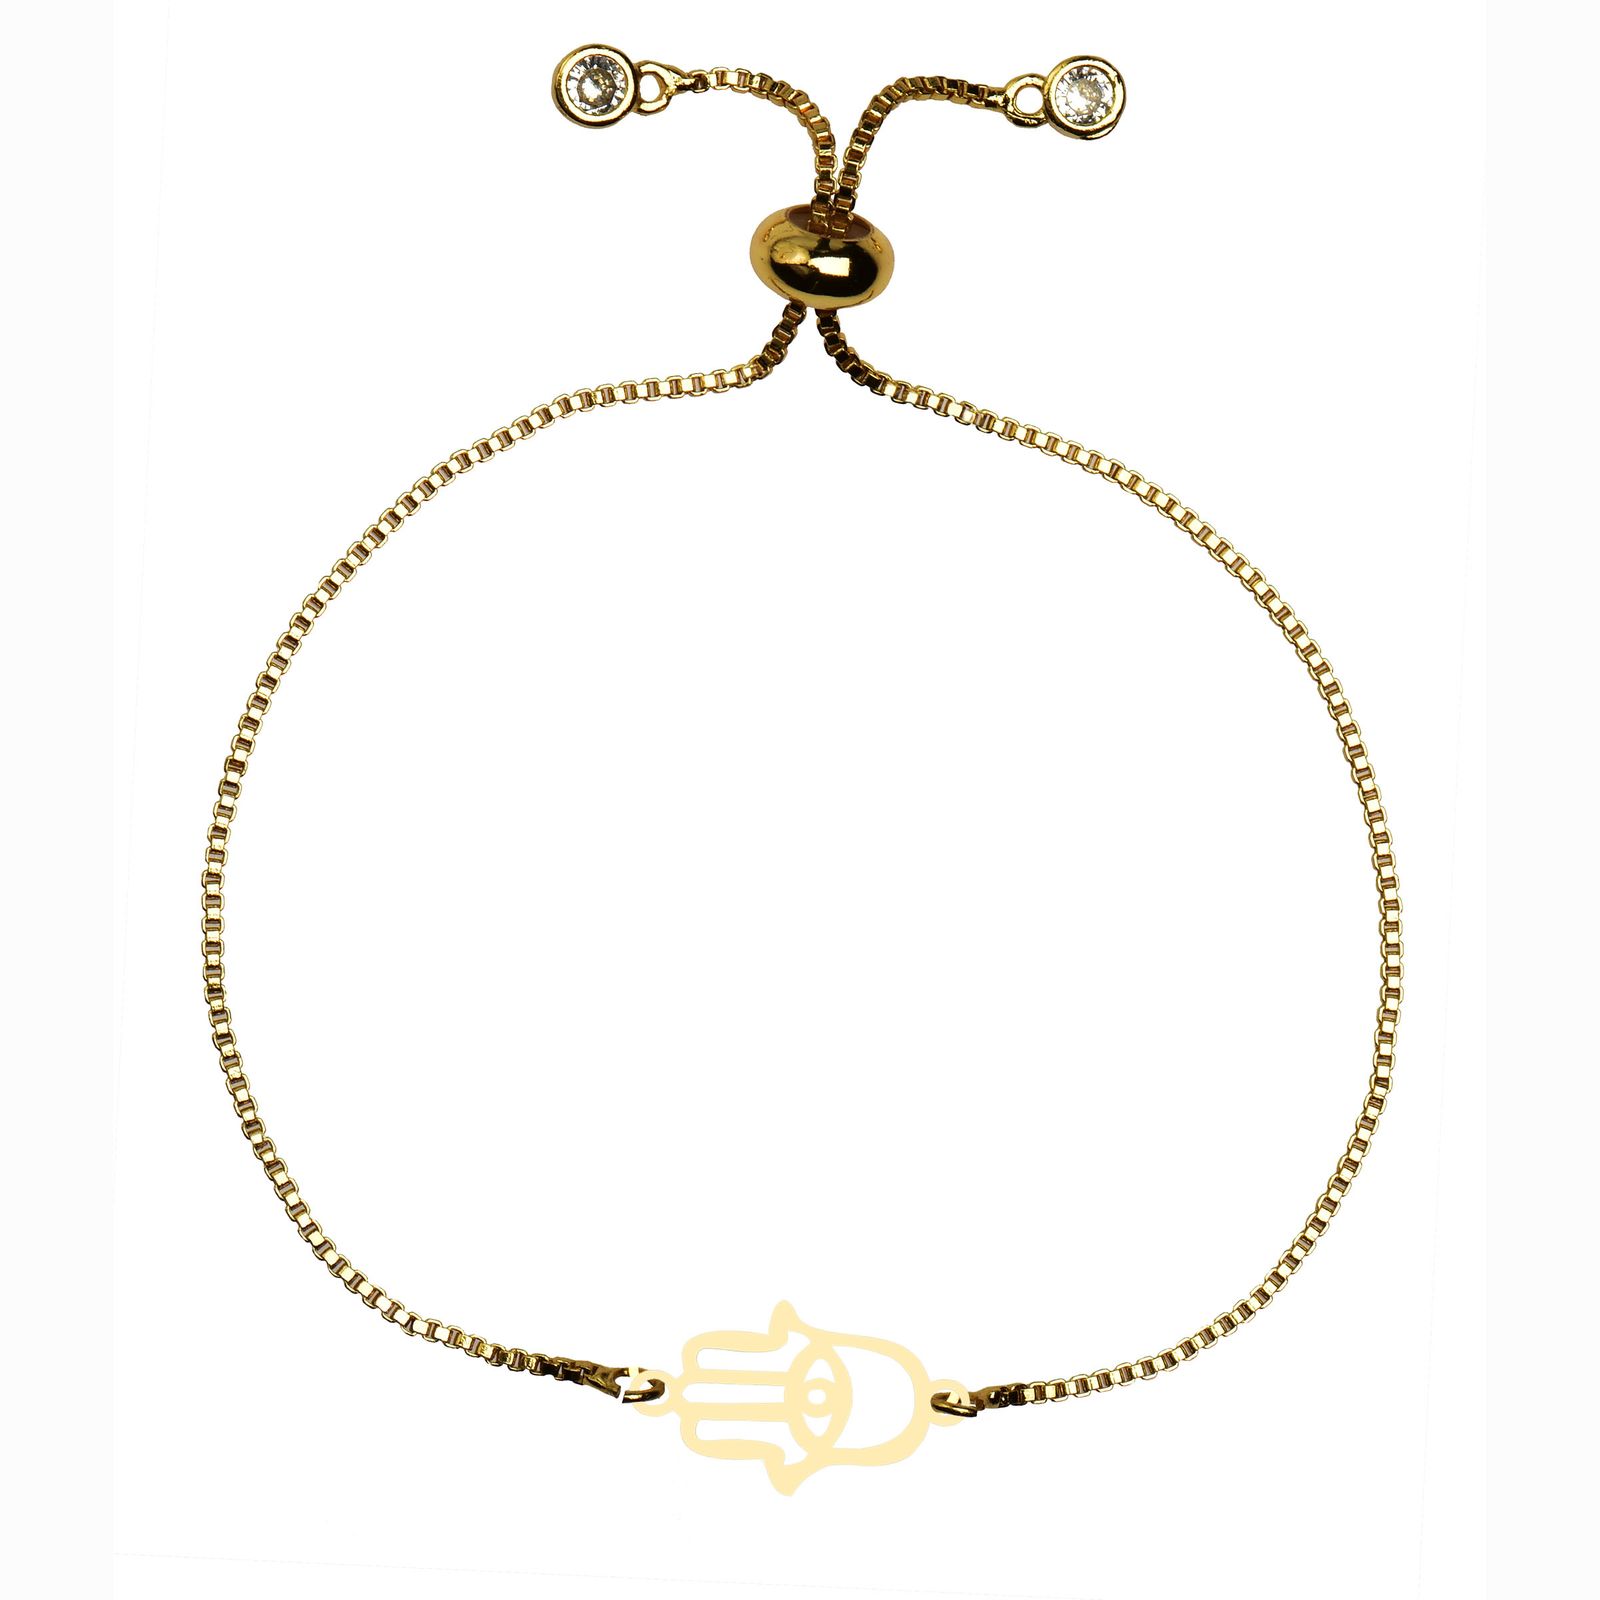 دستبند طلا 18 عیار زنانه کرابو طرح دست همسا مدل Kr102236 -  - 1